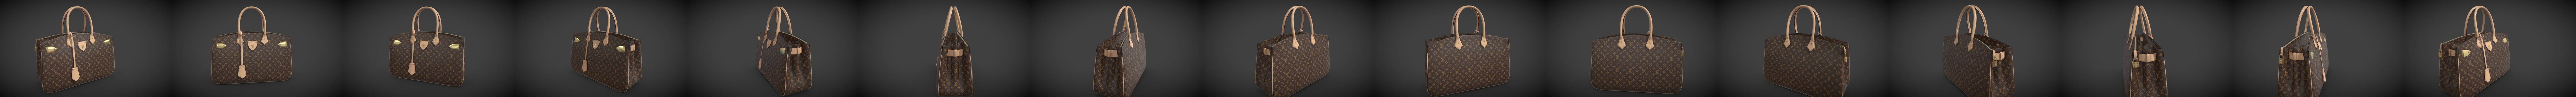 Download Louis Vuitton Bag All Set Monogram Leather 3d Model By 3dmonk 3dmonk E306abb